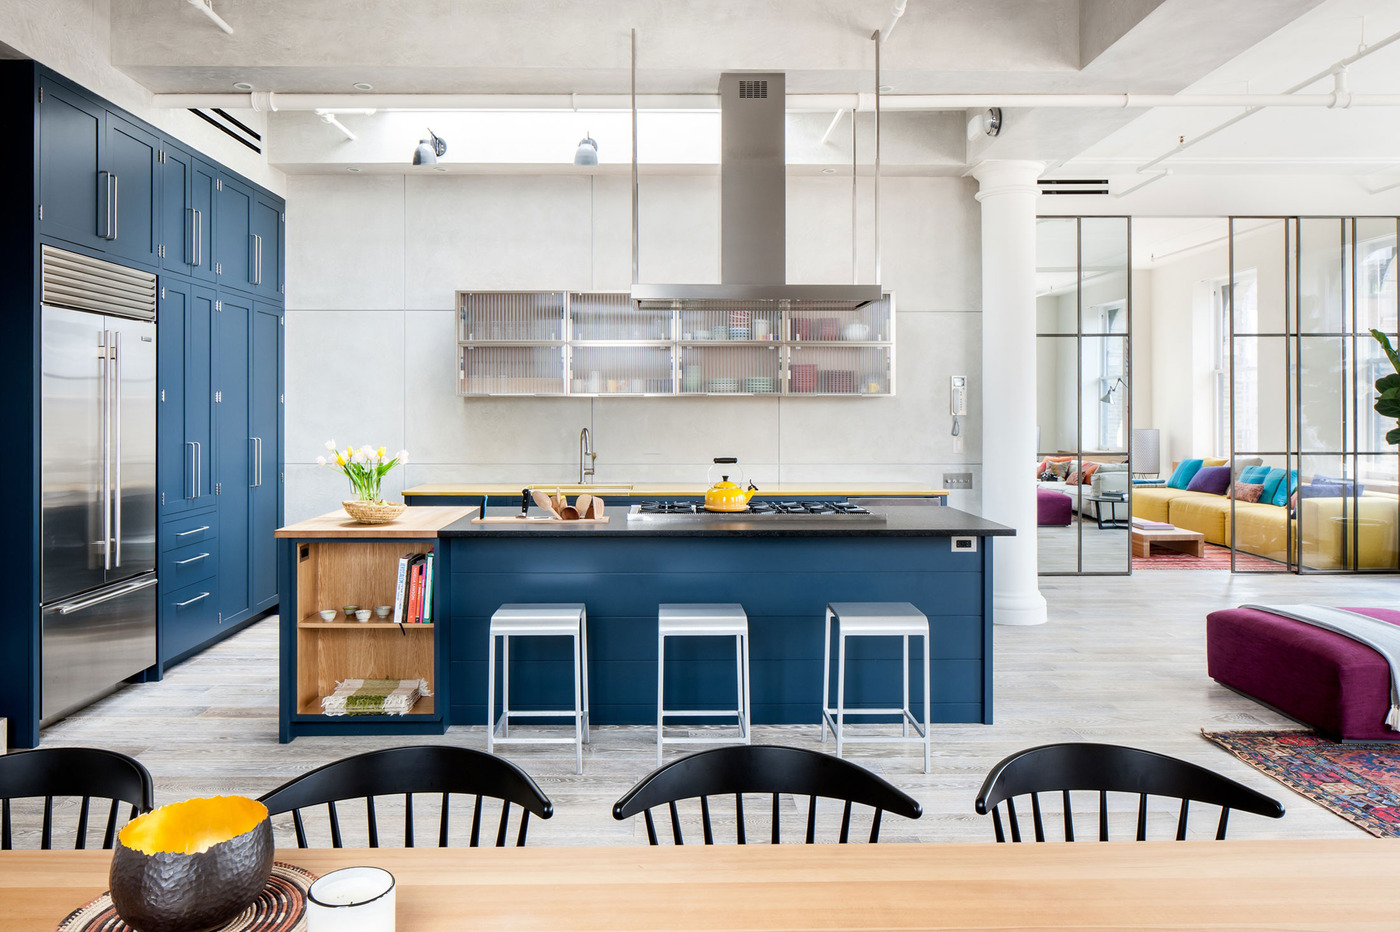 dark-royal-blue-kitchen-on-light-color-floors-2.jpg